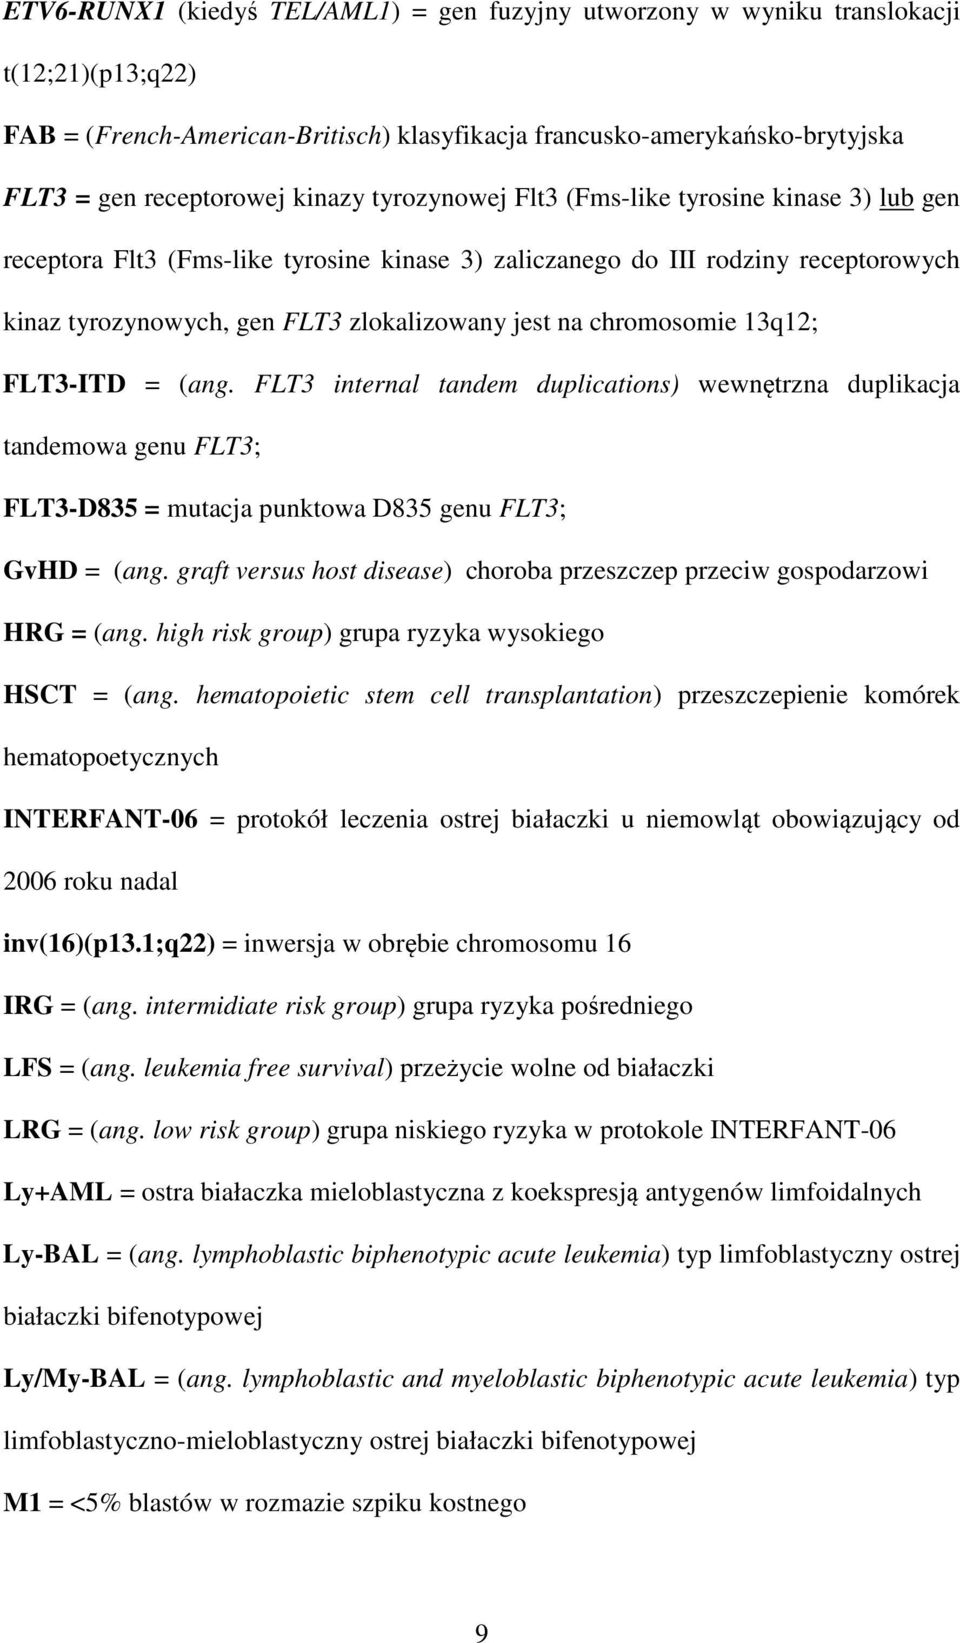 chromosomie 13q12; FLT3-ITD = (ang. FLT3 internal tandem duplications) wewnętrzna duplikacja tandemowa genu FLT3; FLT3-D835 = mutacja punktowa D835 genu FLT3; GvHD = (ang.